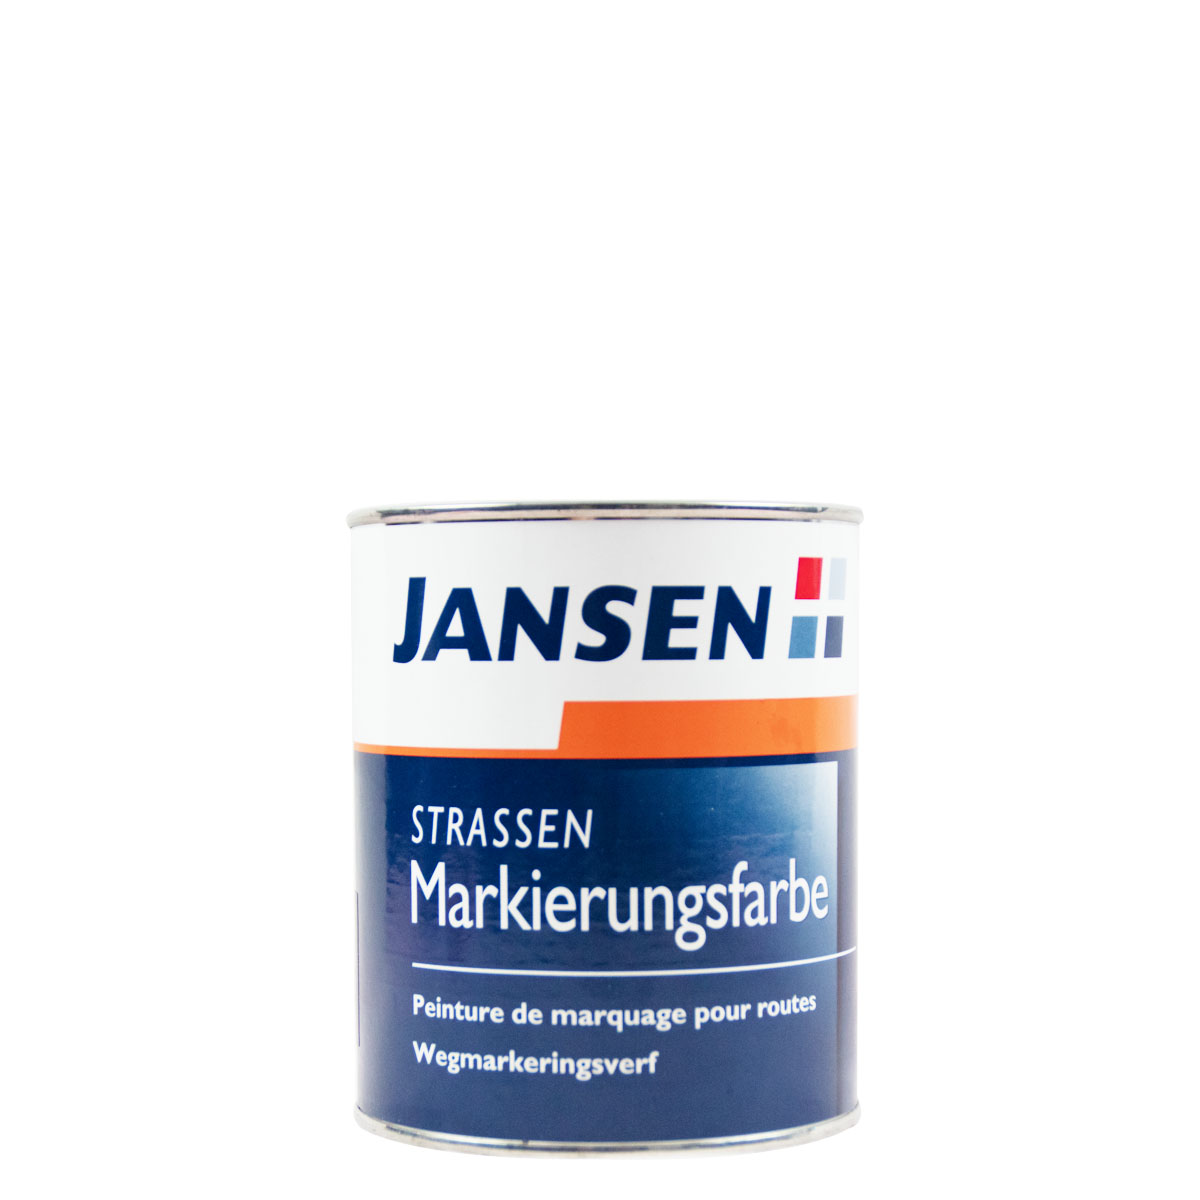 Jansen Straßenmarkierungsfarbe weiss 750 ml BAST-Zulassung